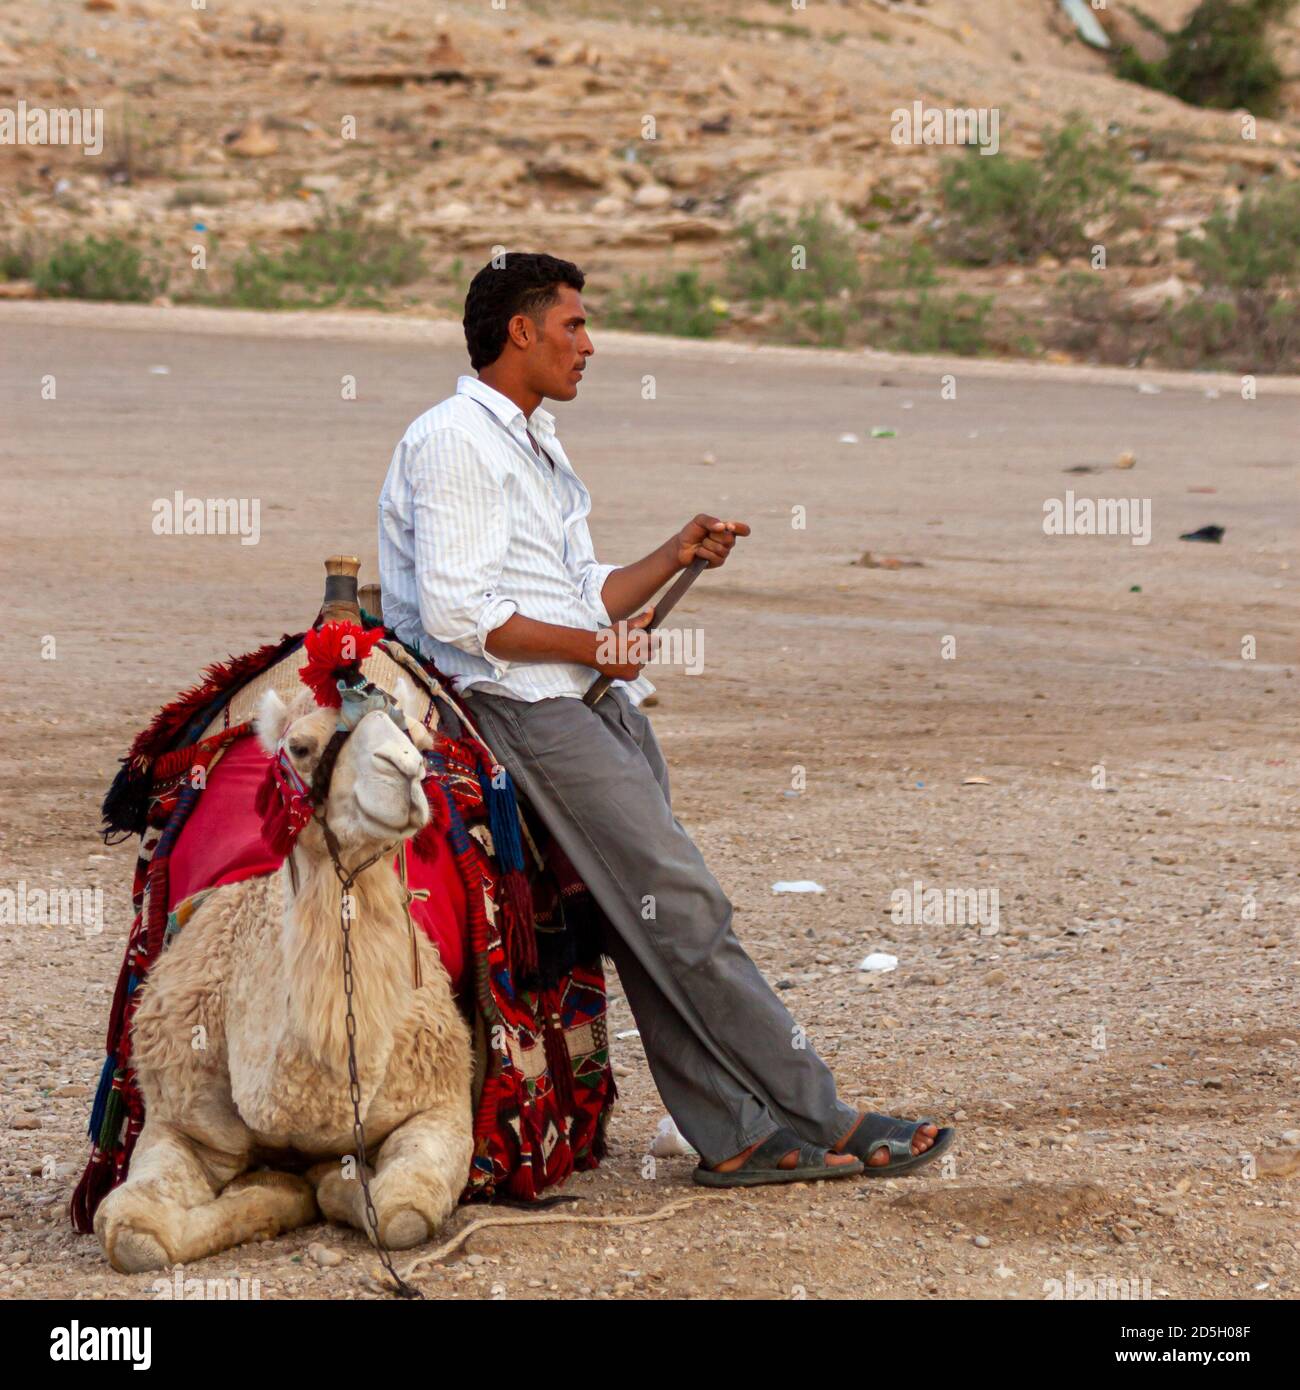 Petra, Jordanie 04/01/2010: Un guide touristique bédouin se penche sur son chameau en attendant les clients touristiques, tandis que l'animal est assis sur terre. Le Banque D'Images